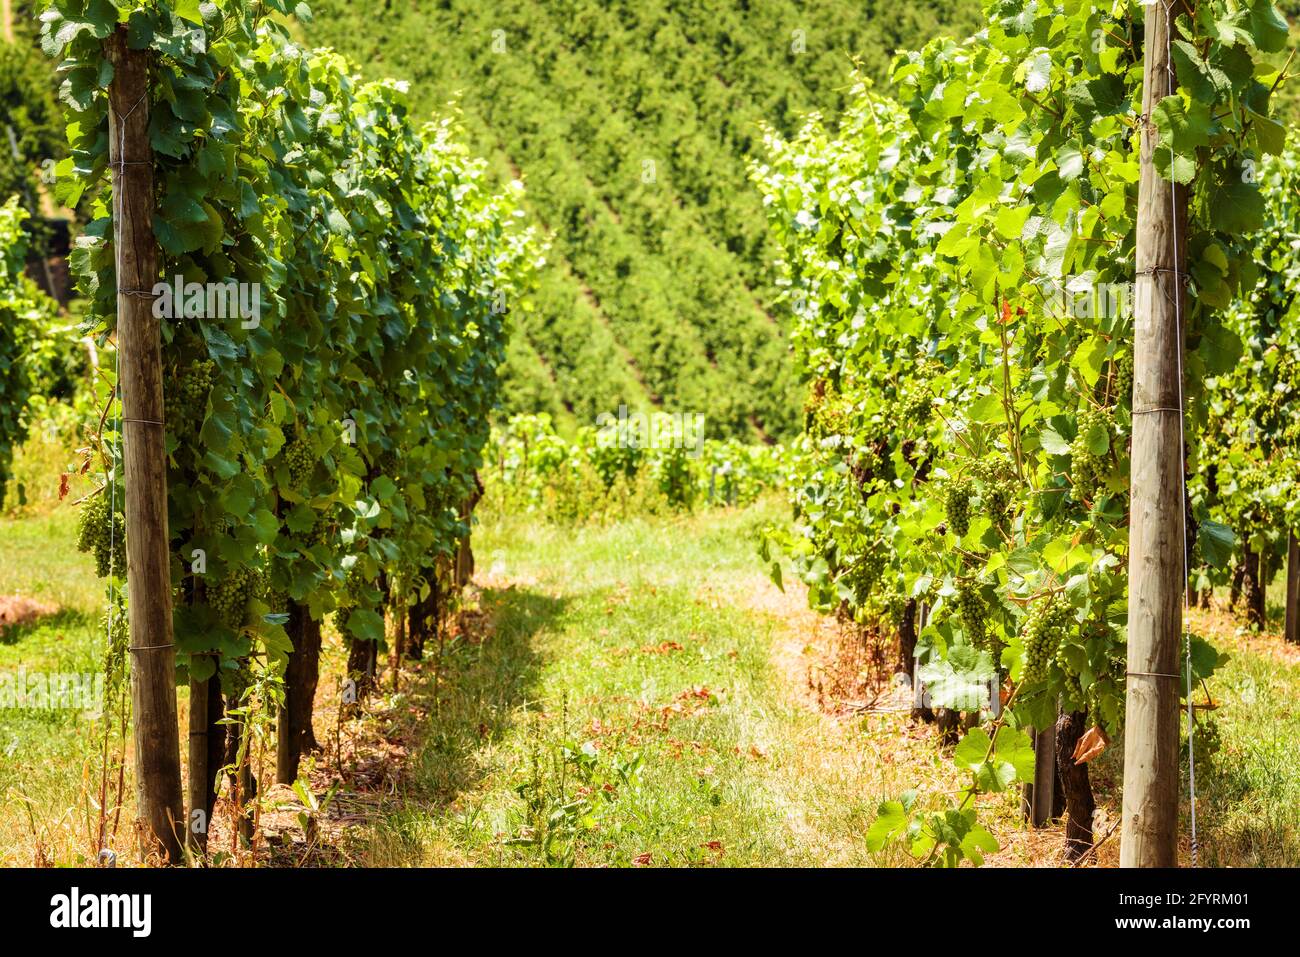 Vignes surplombant le vignoble, ferme viticole dans la vallée. Plantation de vignes vertes en été. Concept de viticulture, cave de vinification, vinification et tourisme. P Banque D'Images